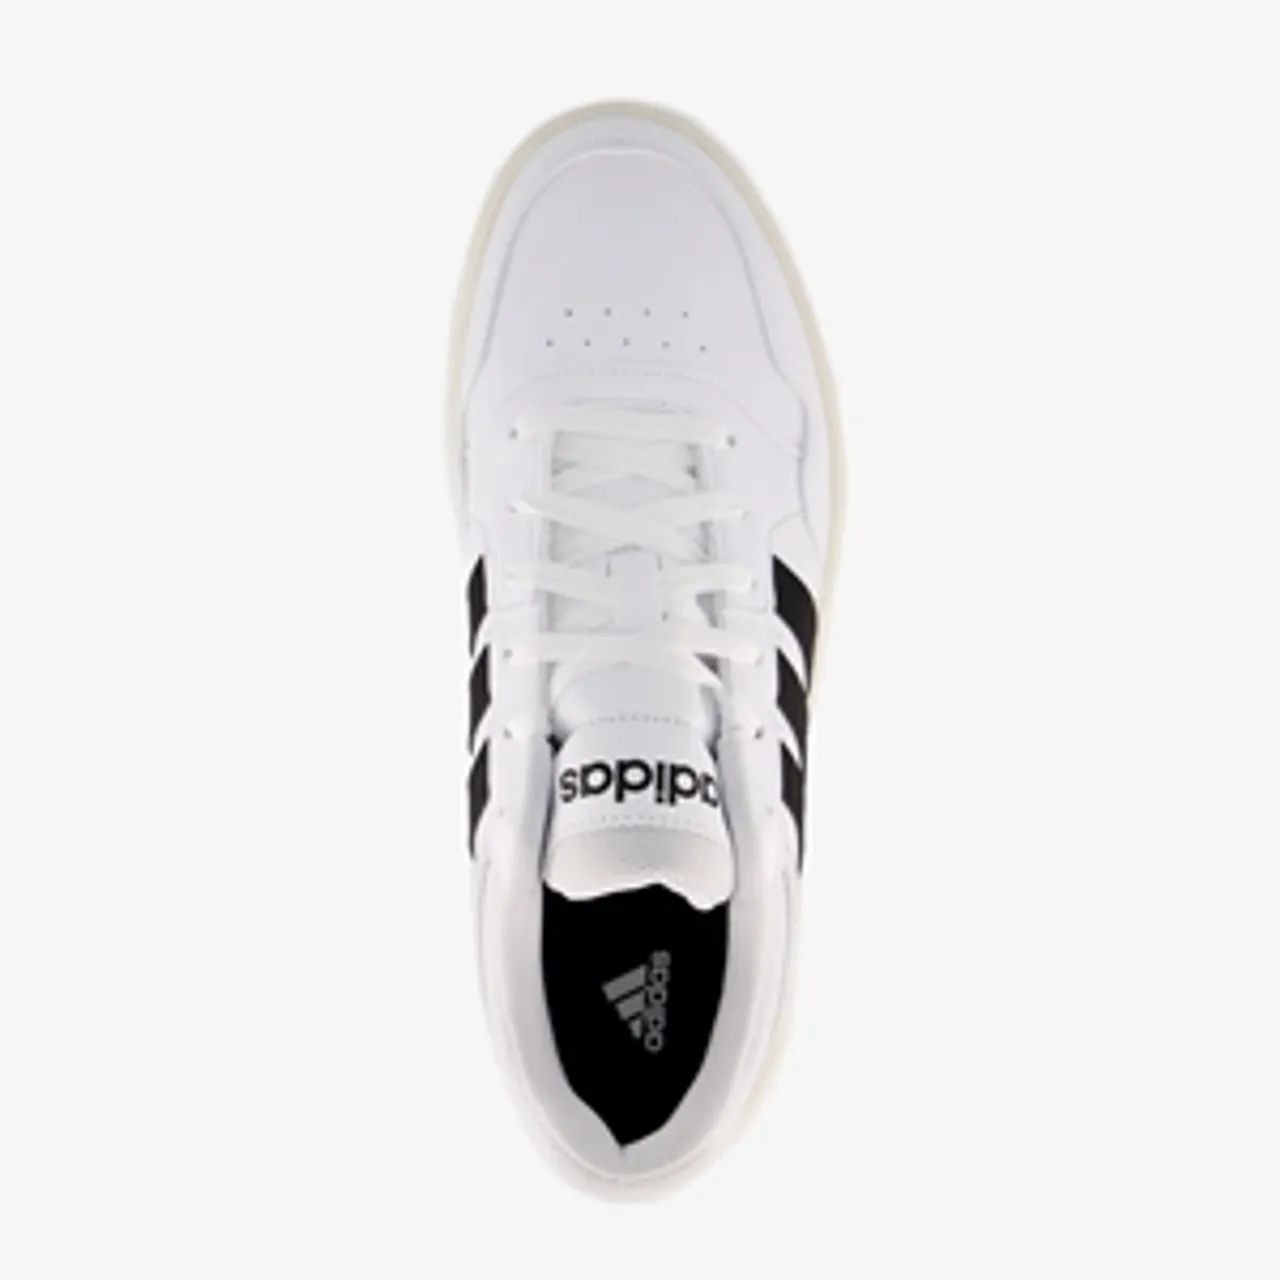 Adidas Hoops 3.0 heren sneakers wit zwart